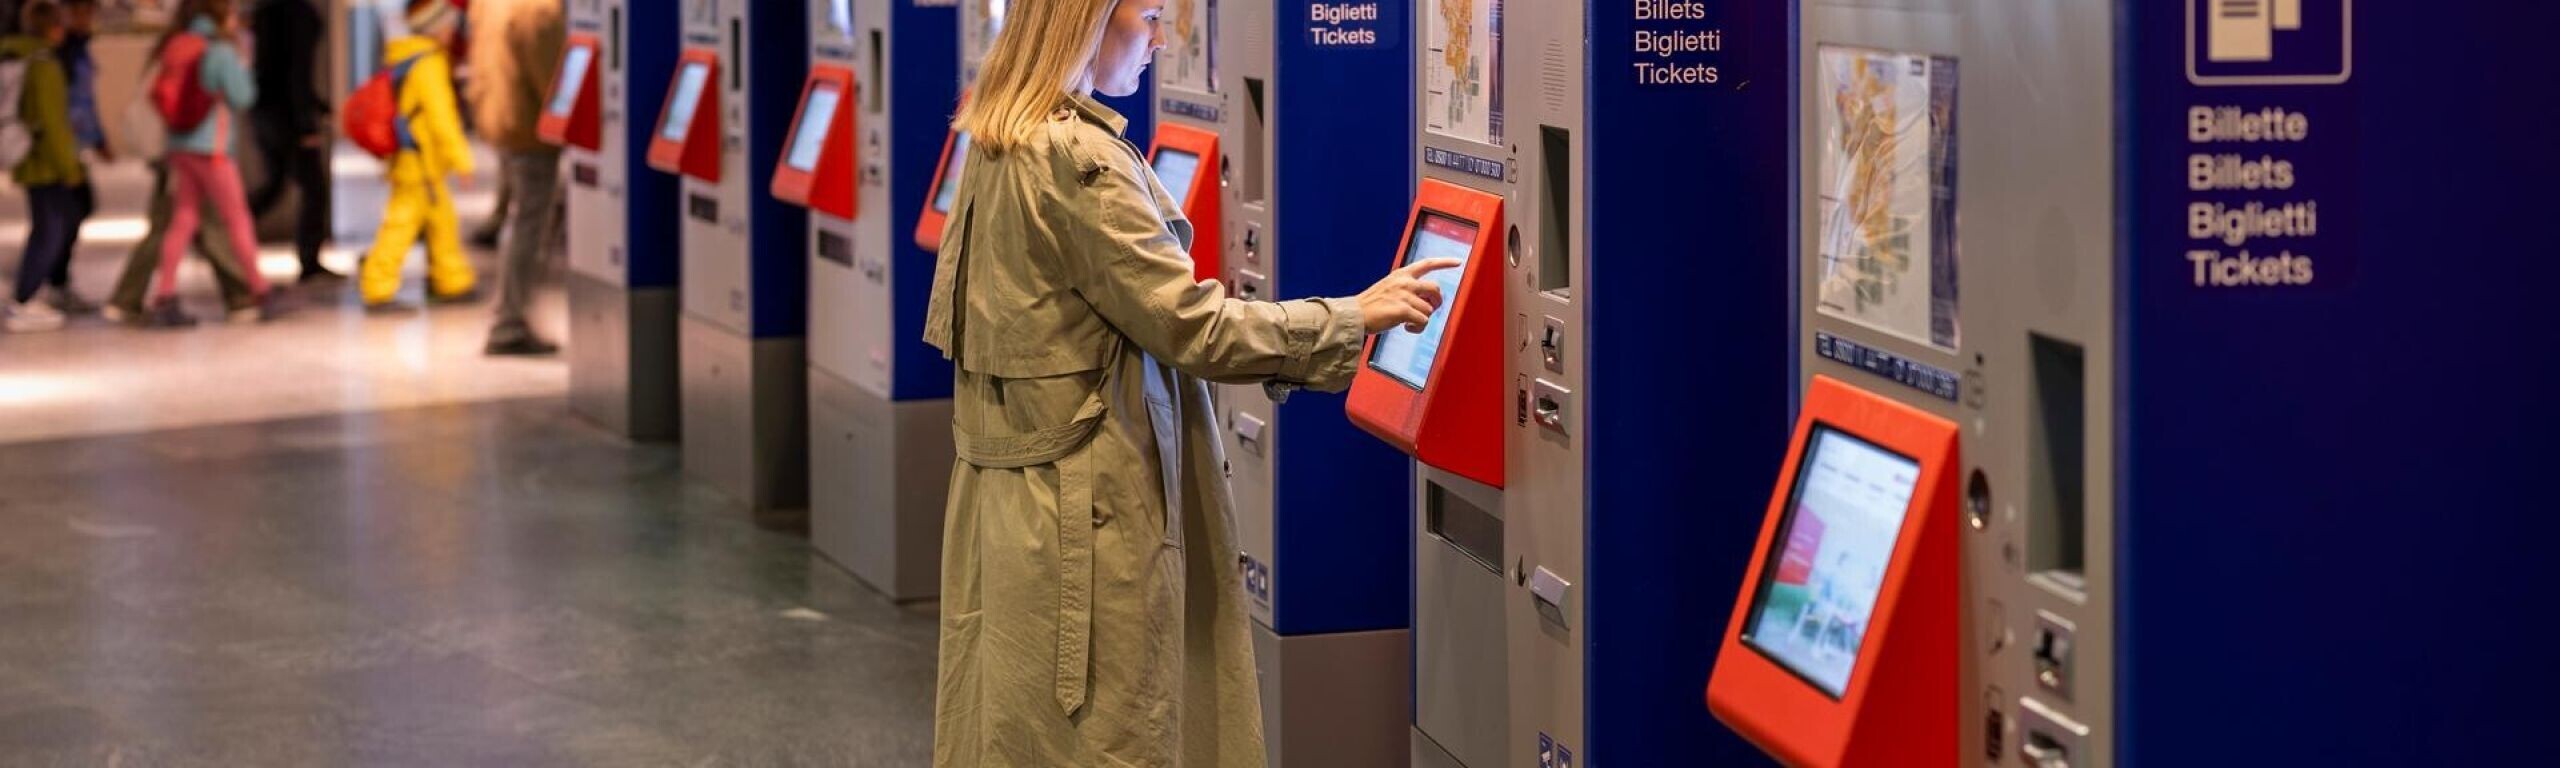 Nachgefragt: Wie sieht die Zukunft des Billettautomaten aus?